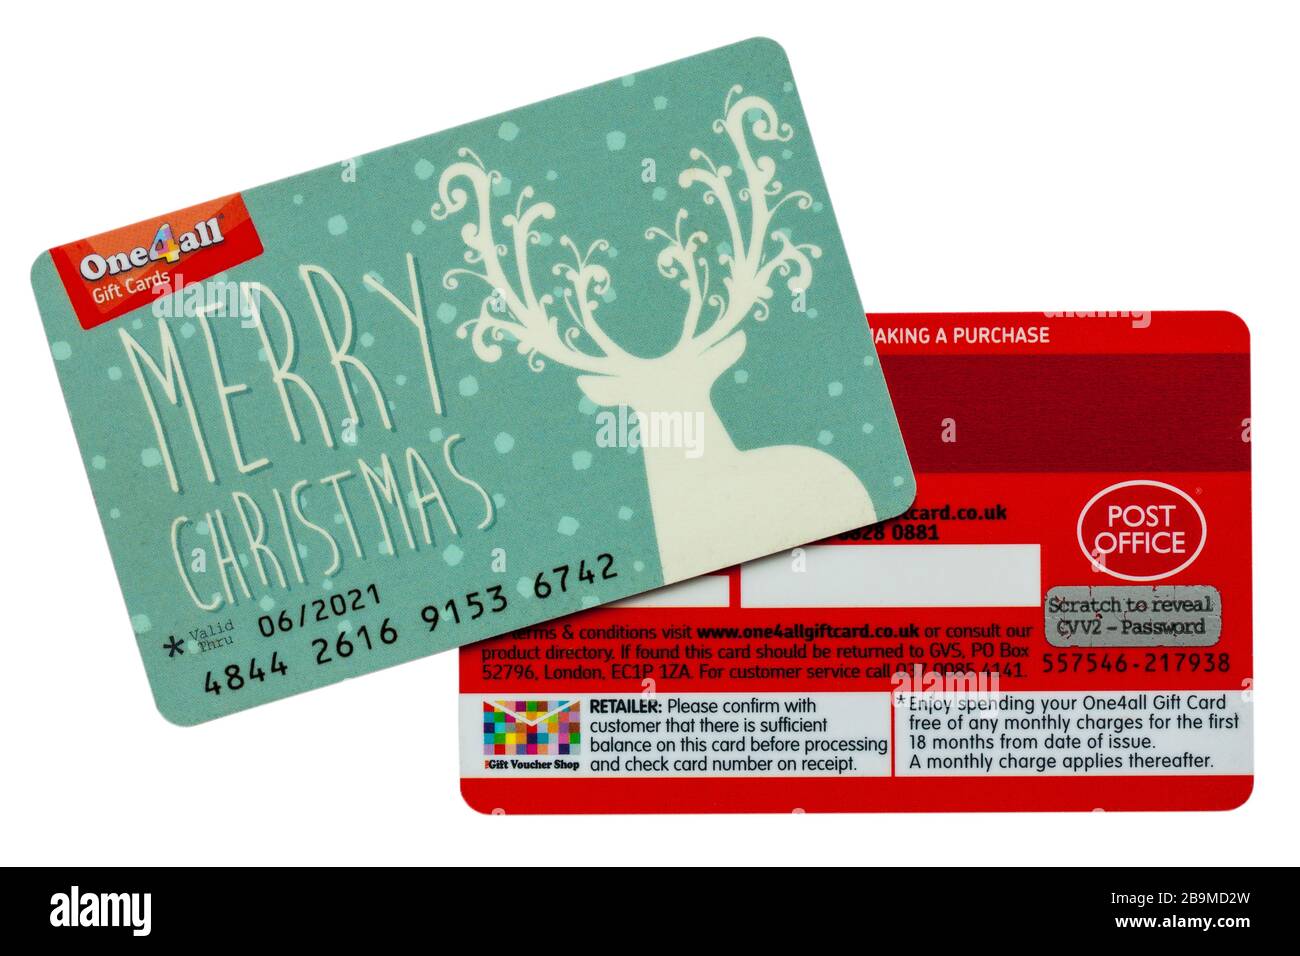 Cartes-cadeaux One4All carte-cadeau de Noël à utiliser dans plusieurs magasins affichant l'avant et l'arrière-plan isolé sur fond blanc - cartes-cadeaux multi-magasins Banque D'Images